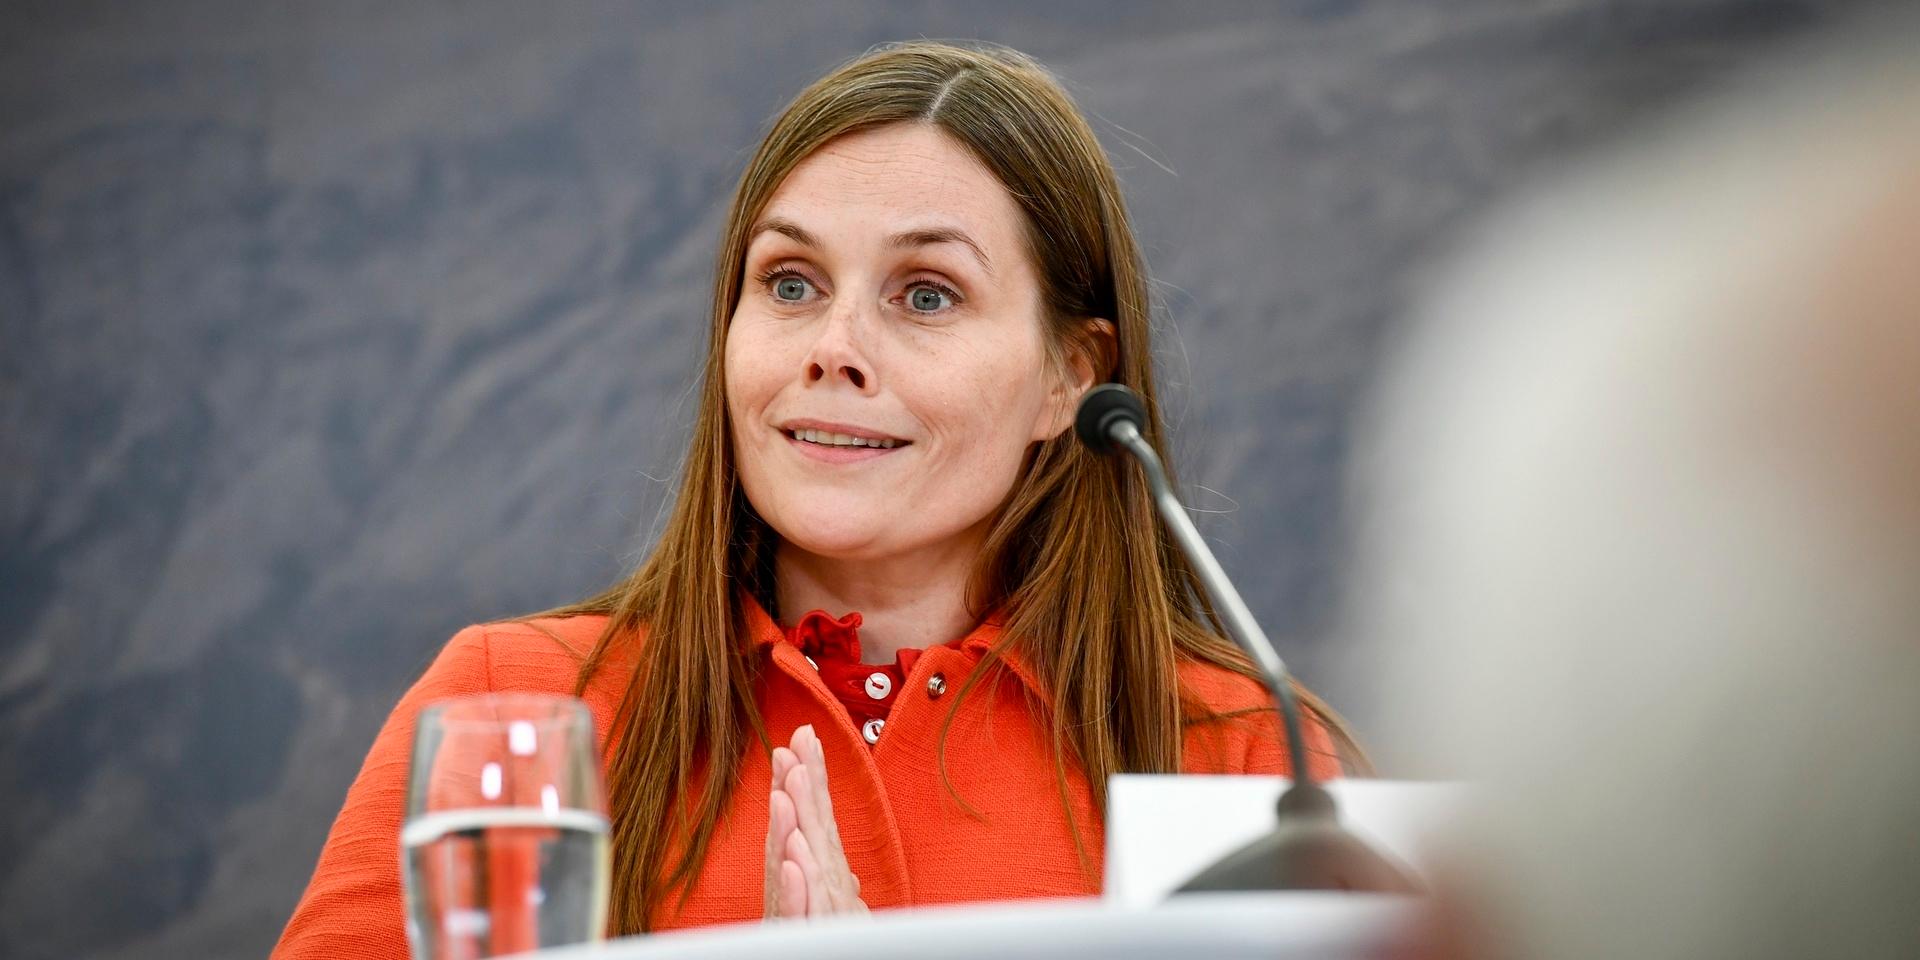 Islands statsminister Katrín Jakobsdóttir får sannolikt sitta kvar på posten om den sittande regeringen får förtroende att fortsätta. Arkivbild.